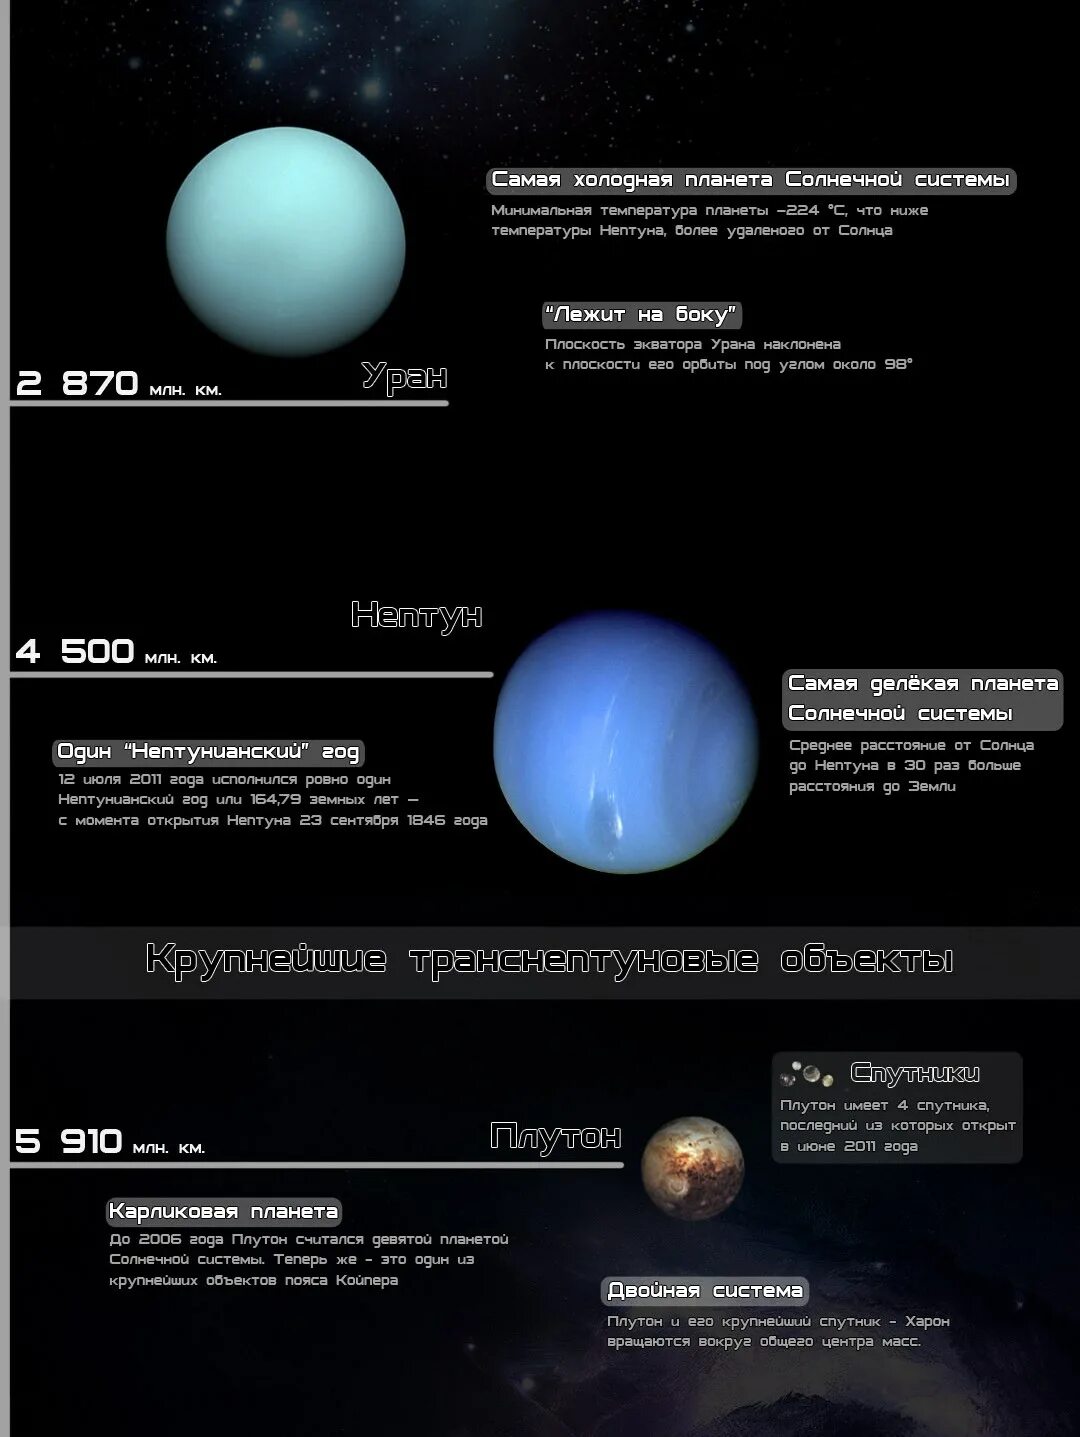 Самый большой объект в солнечной системе. Транснептуновые планеты. Самая холодная Планета солнечной системы. Крупные объекты солнечной системы. Самая Холодное Планета в солнечной системе.